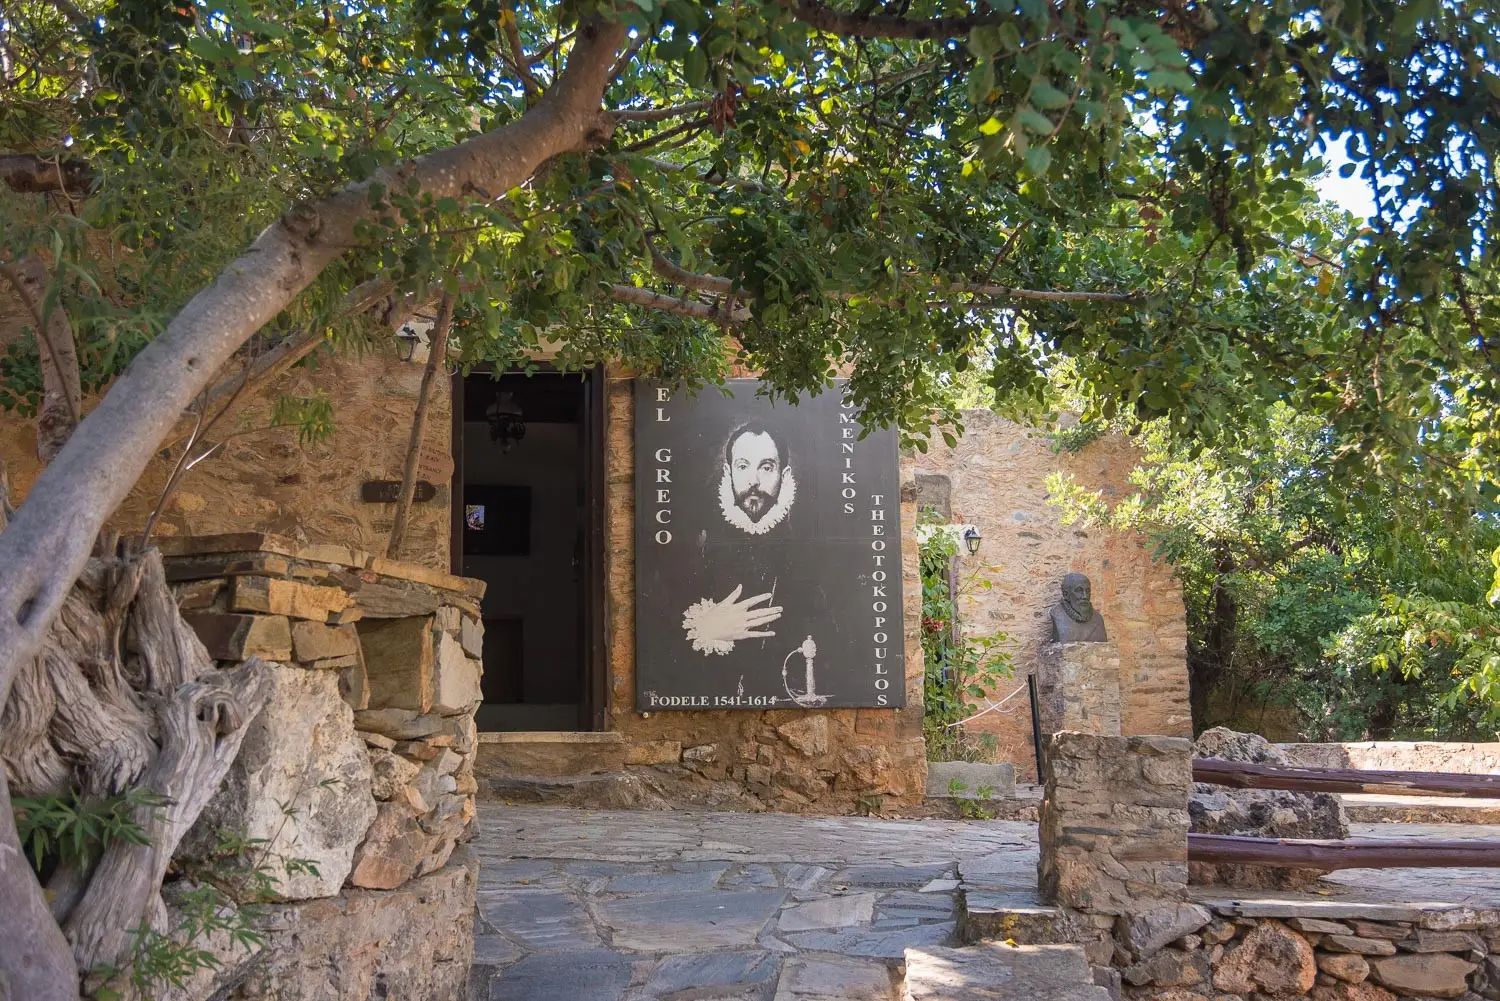 El Greco paternal house - Ela Quad Safari